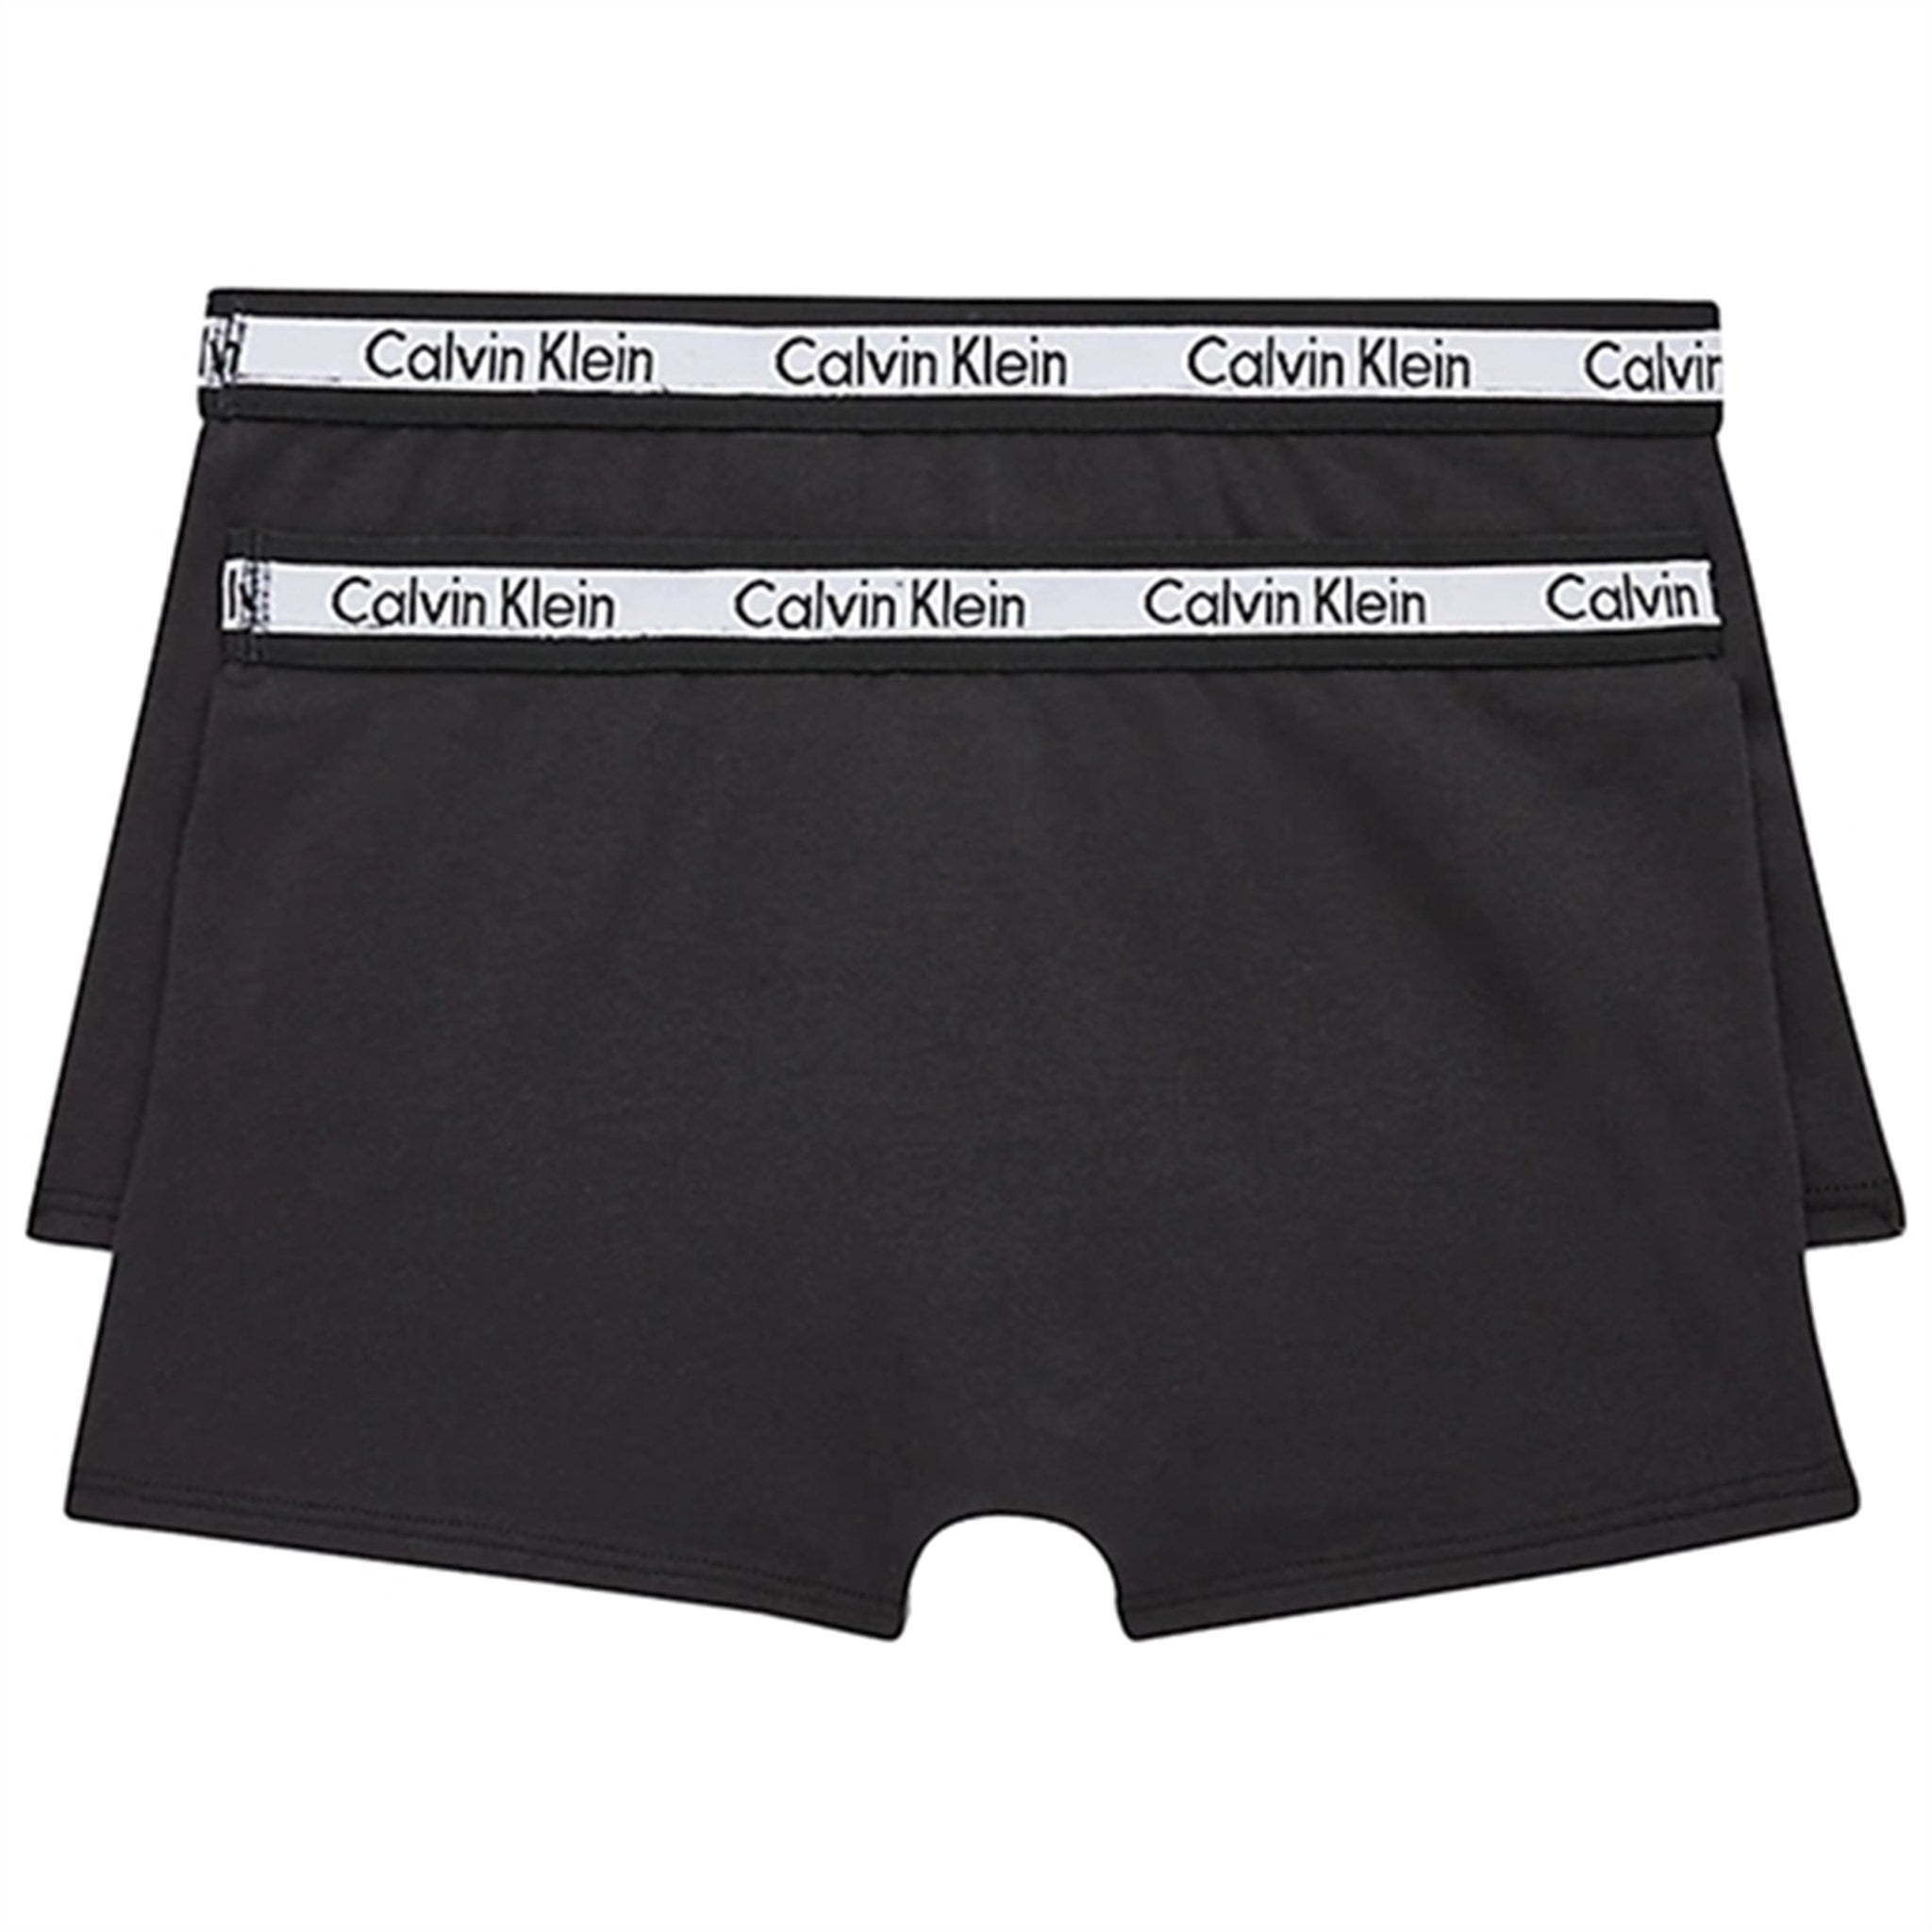 Calvin Klein Boxershorts 2-Pack Black 2